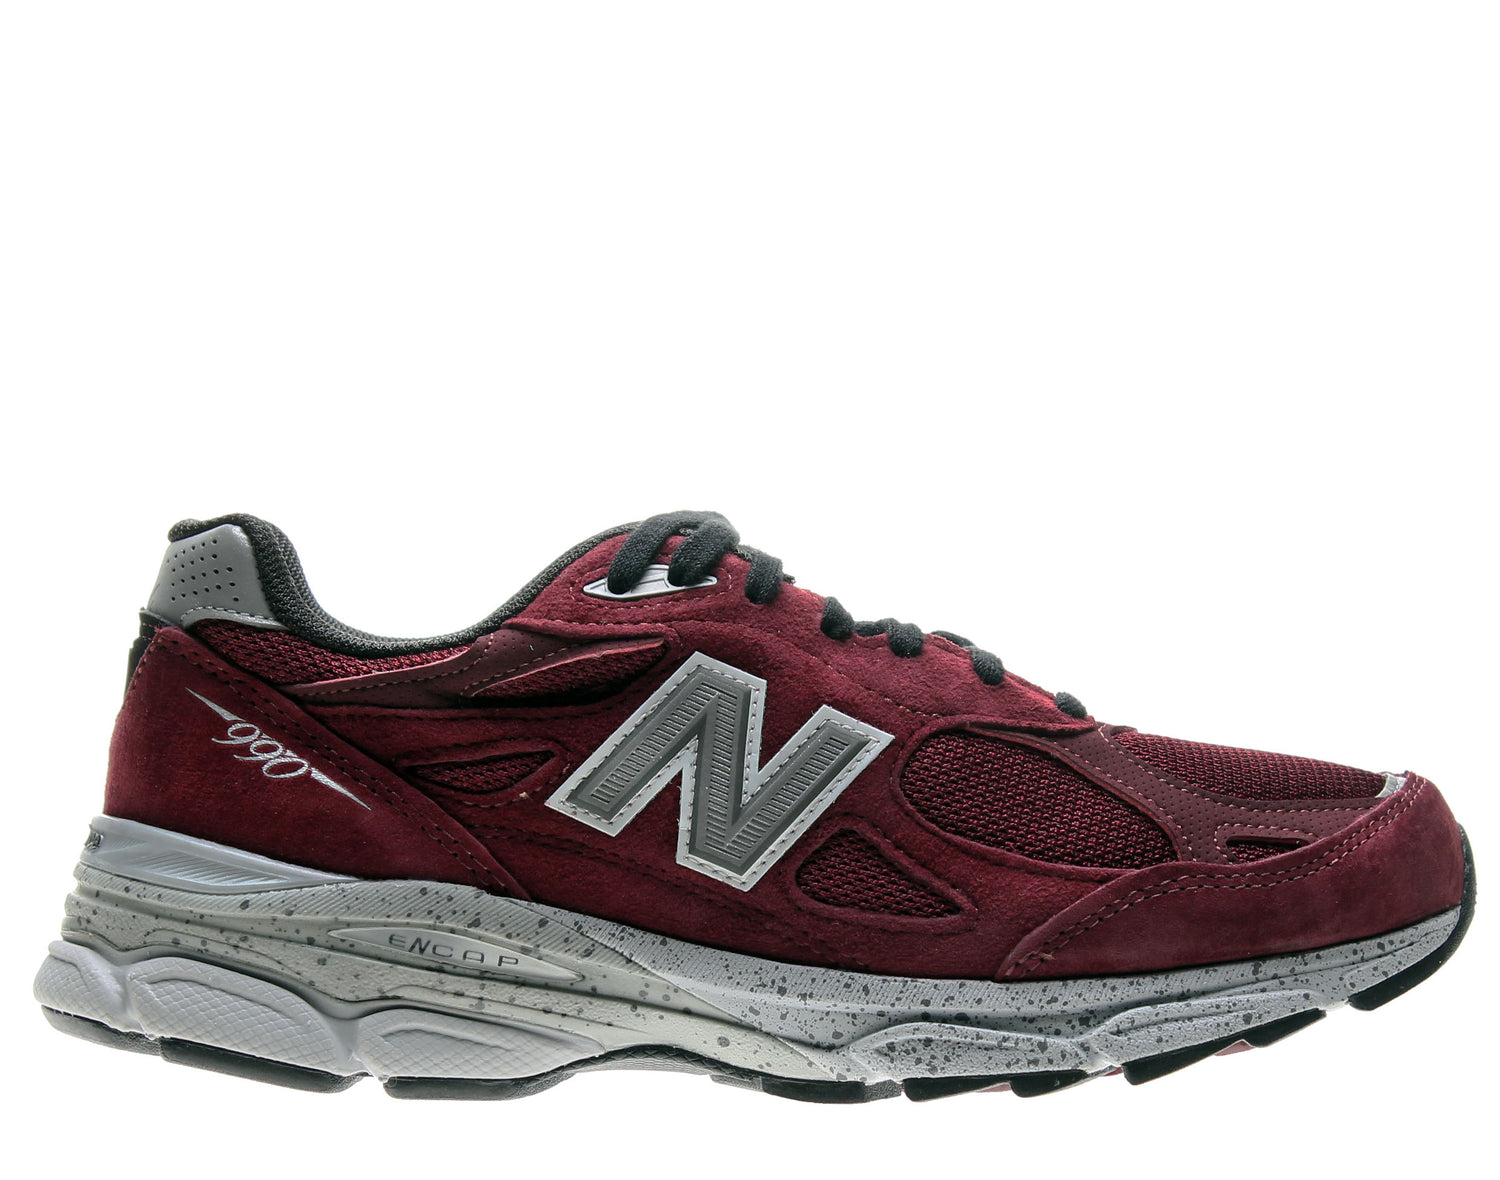 New Balance 990v3 Men's Running Shoes